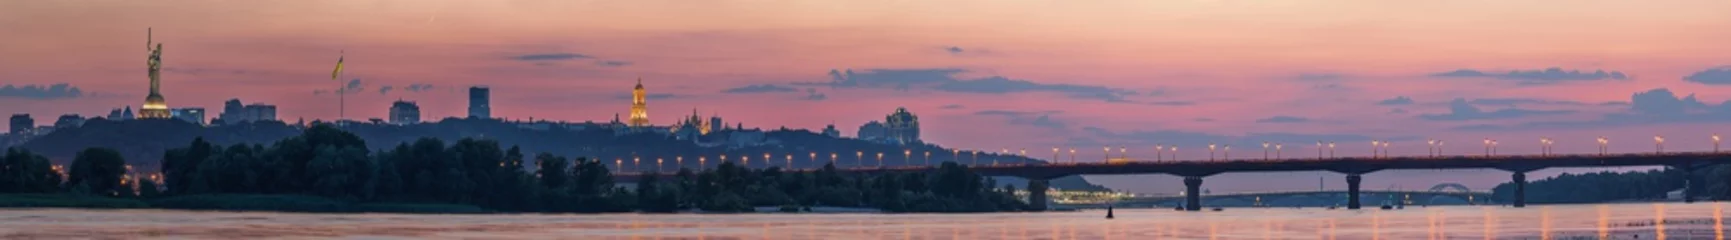 Wandcirkels plexiglas Uitzicht op Kiev Pechersk Lavra, Motherland Monument, Kiev bruggen en de rivier de Dnjepr, na zonsondergang wordt een dunne halve maan aan de oranje hemel gezien. © underwaterstas